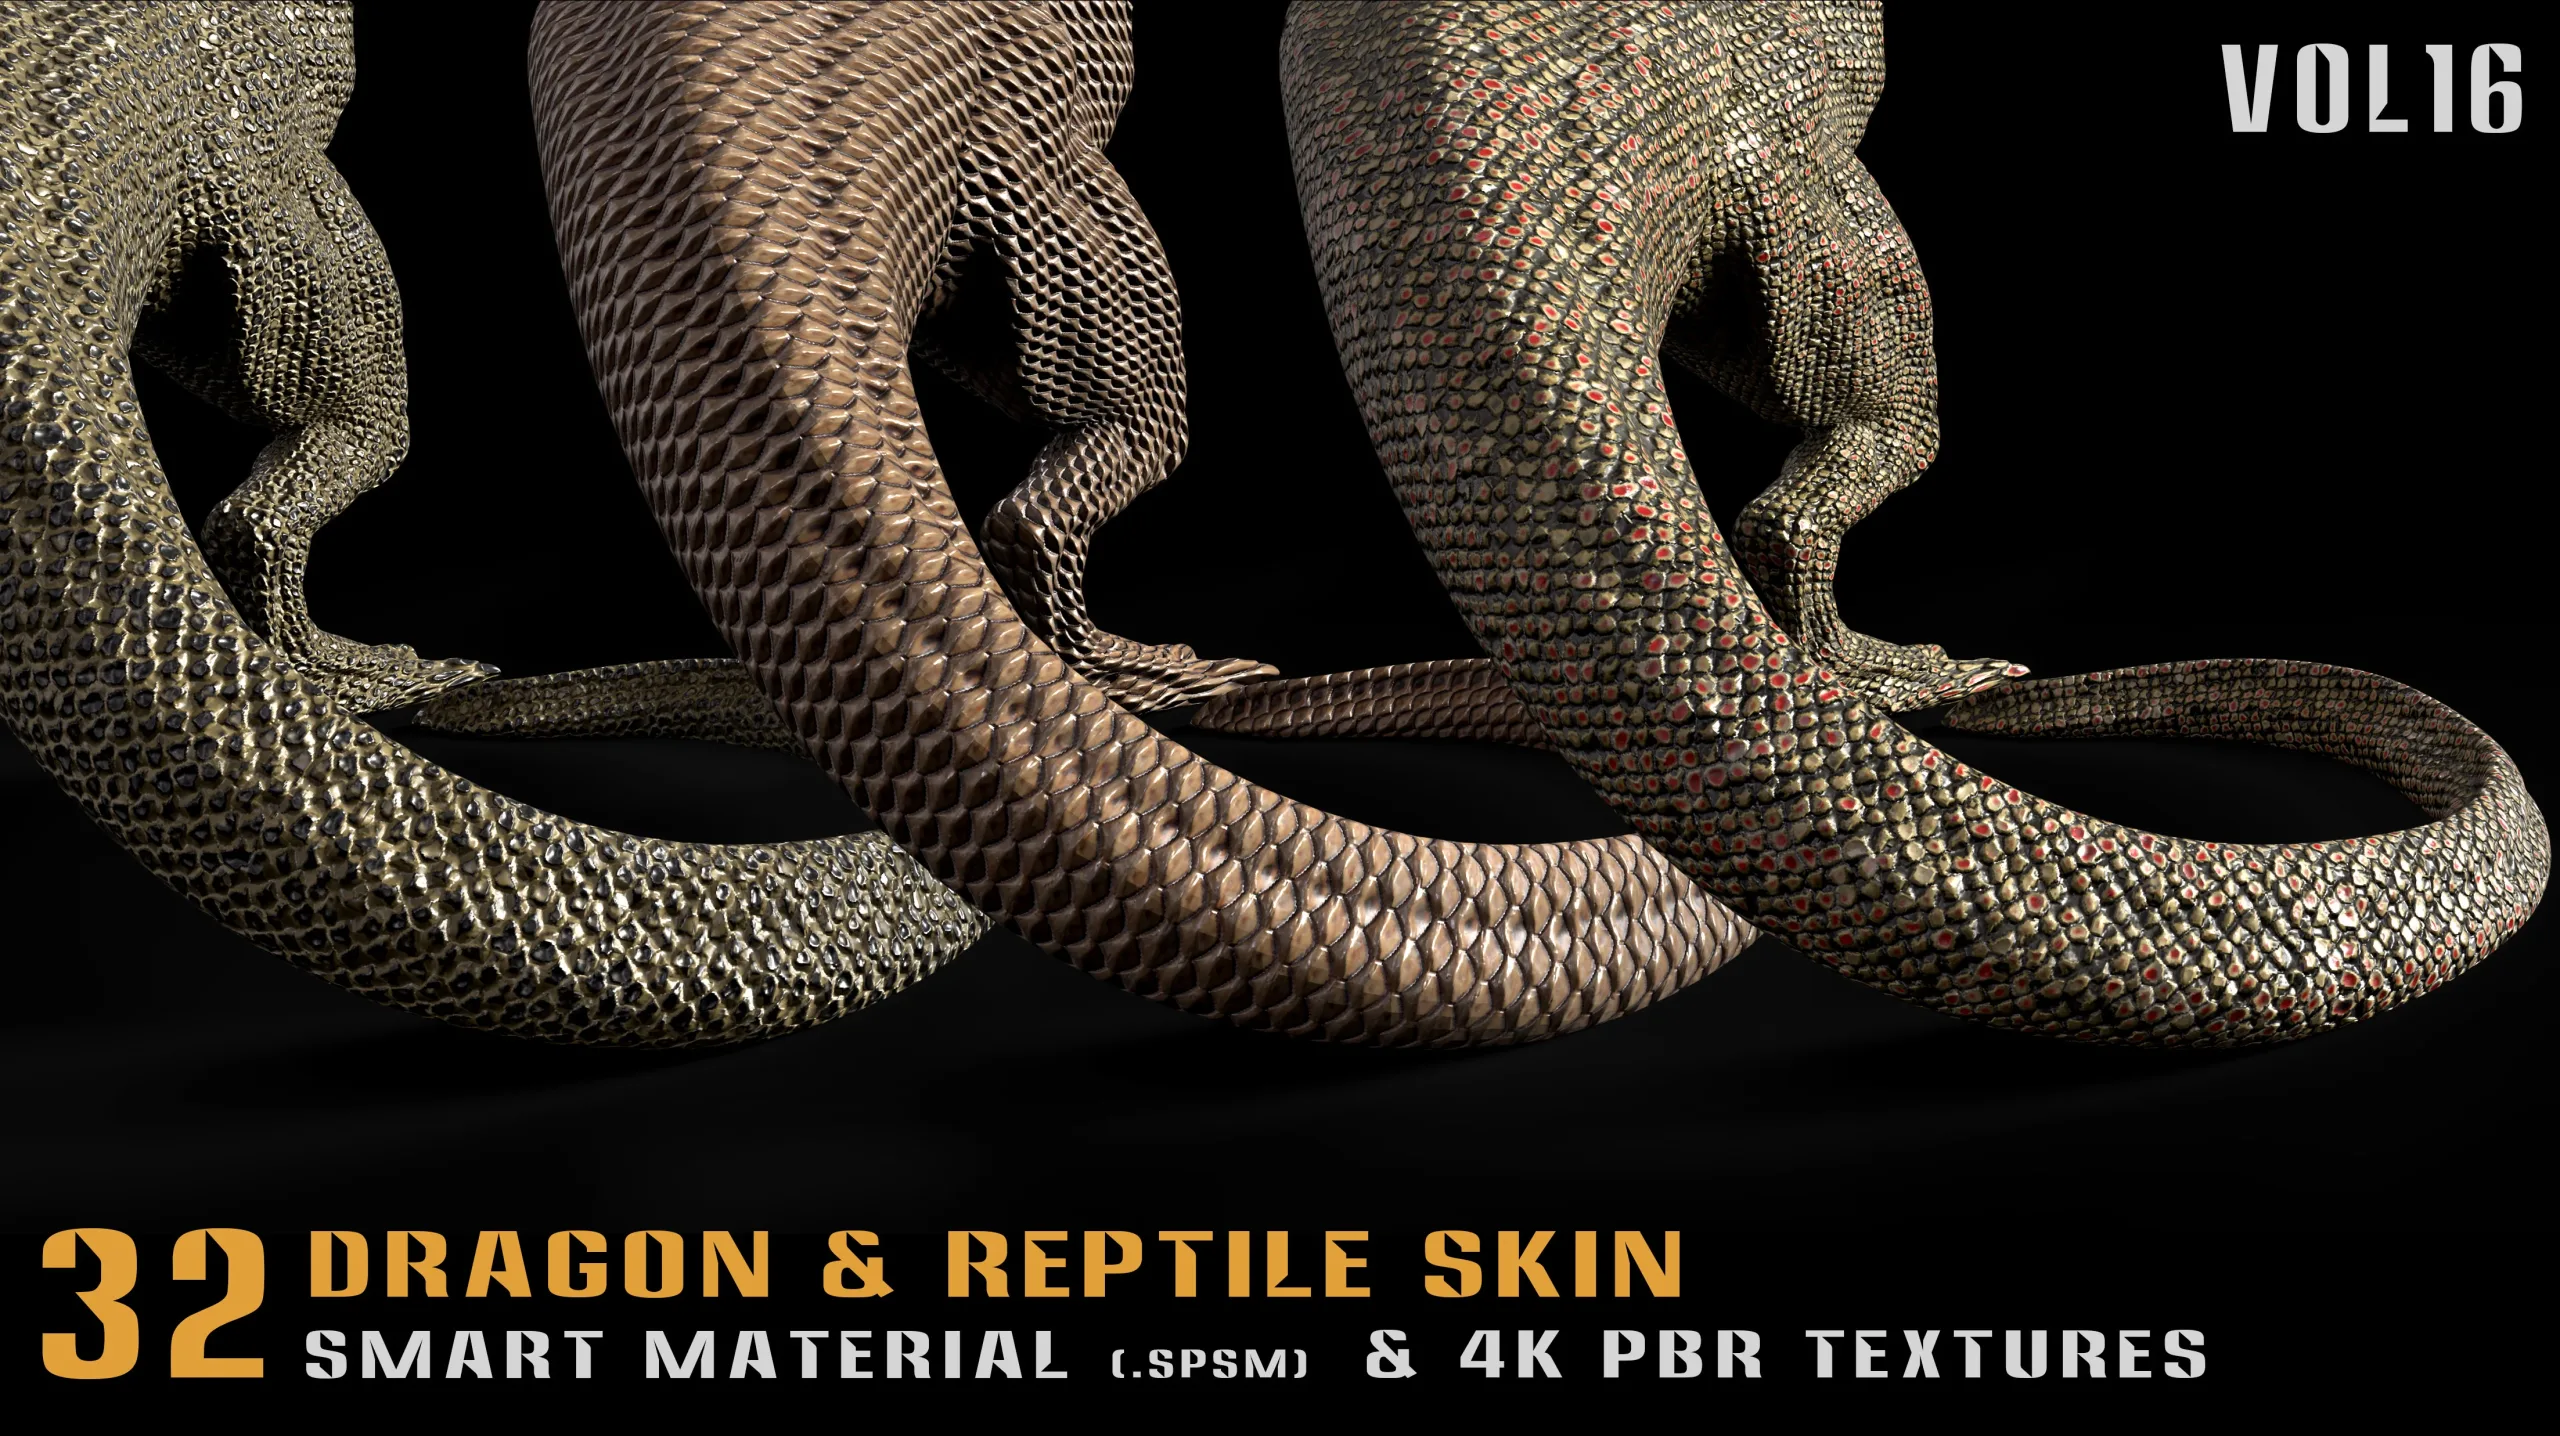 32 Dragon & Reptile Skin Smart Material + 4K PBR textures - Vol.16